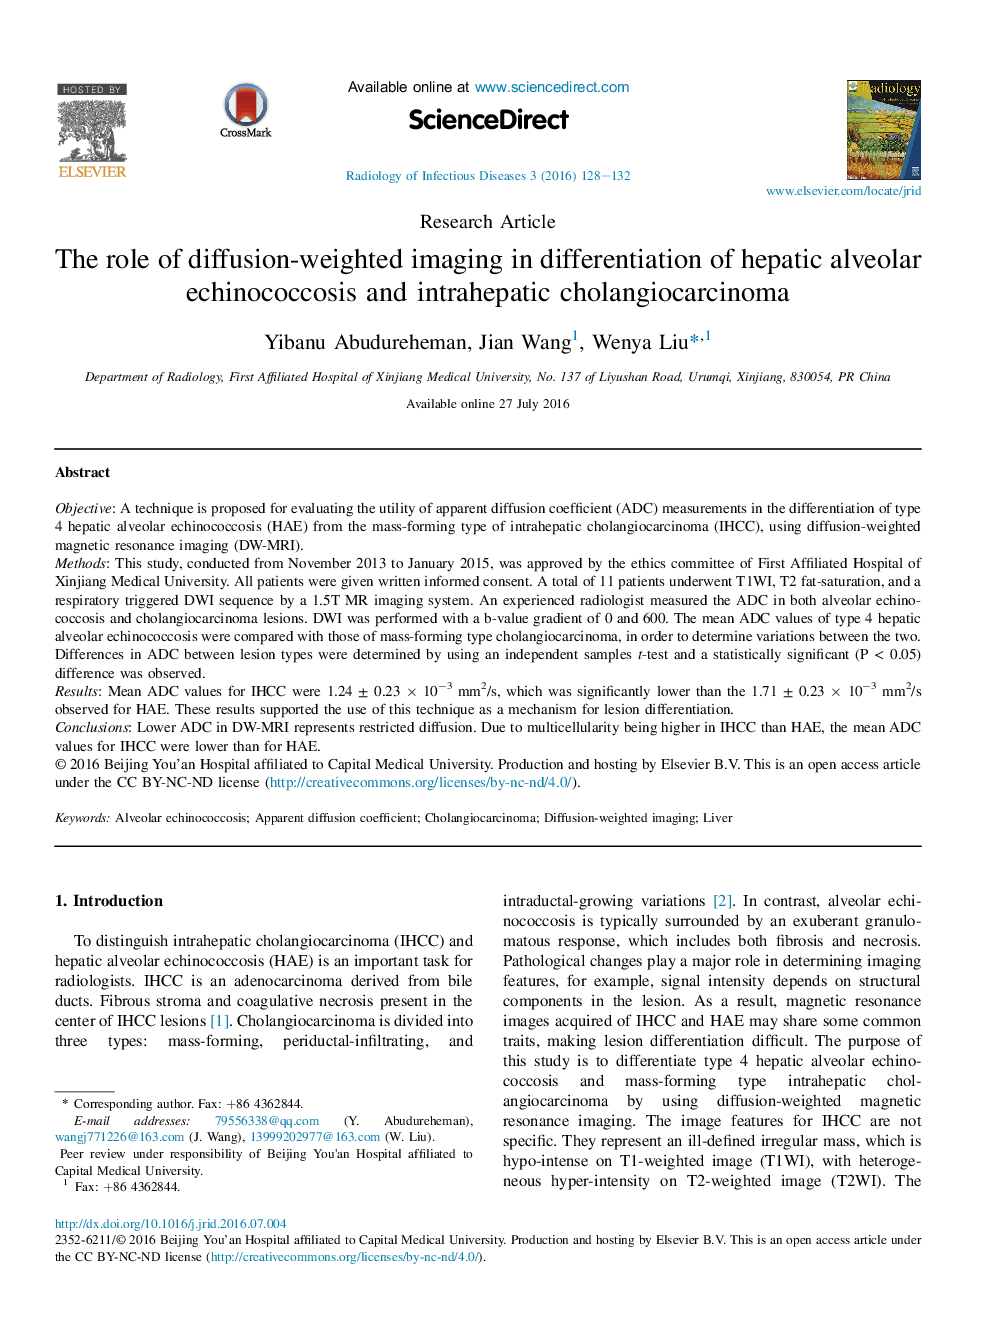 نقش تصویربرداری با وزن مولکولی در تمایز اچینوکوکوز آلوئولار با کبد و کلانژیوکارسینوم داخل صفاقی 